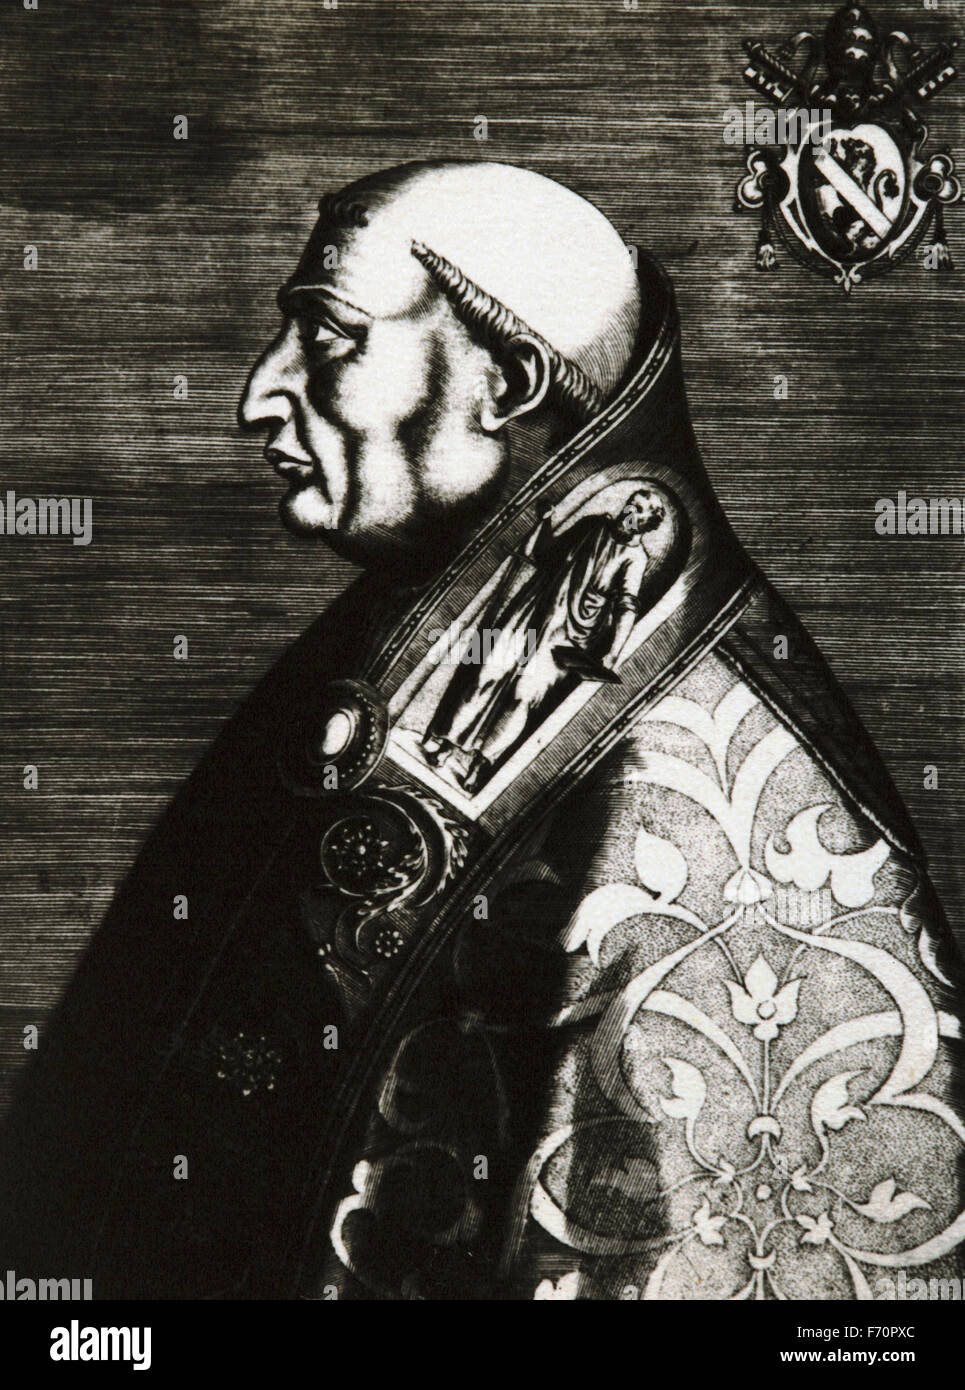 Papst Paul II. (1417-1471). Geboren Pietro Barbo. Papst von 1464-1471. Porträt. Gravur. Stockfoto